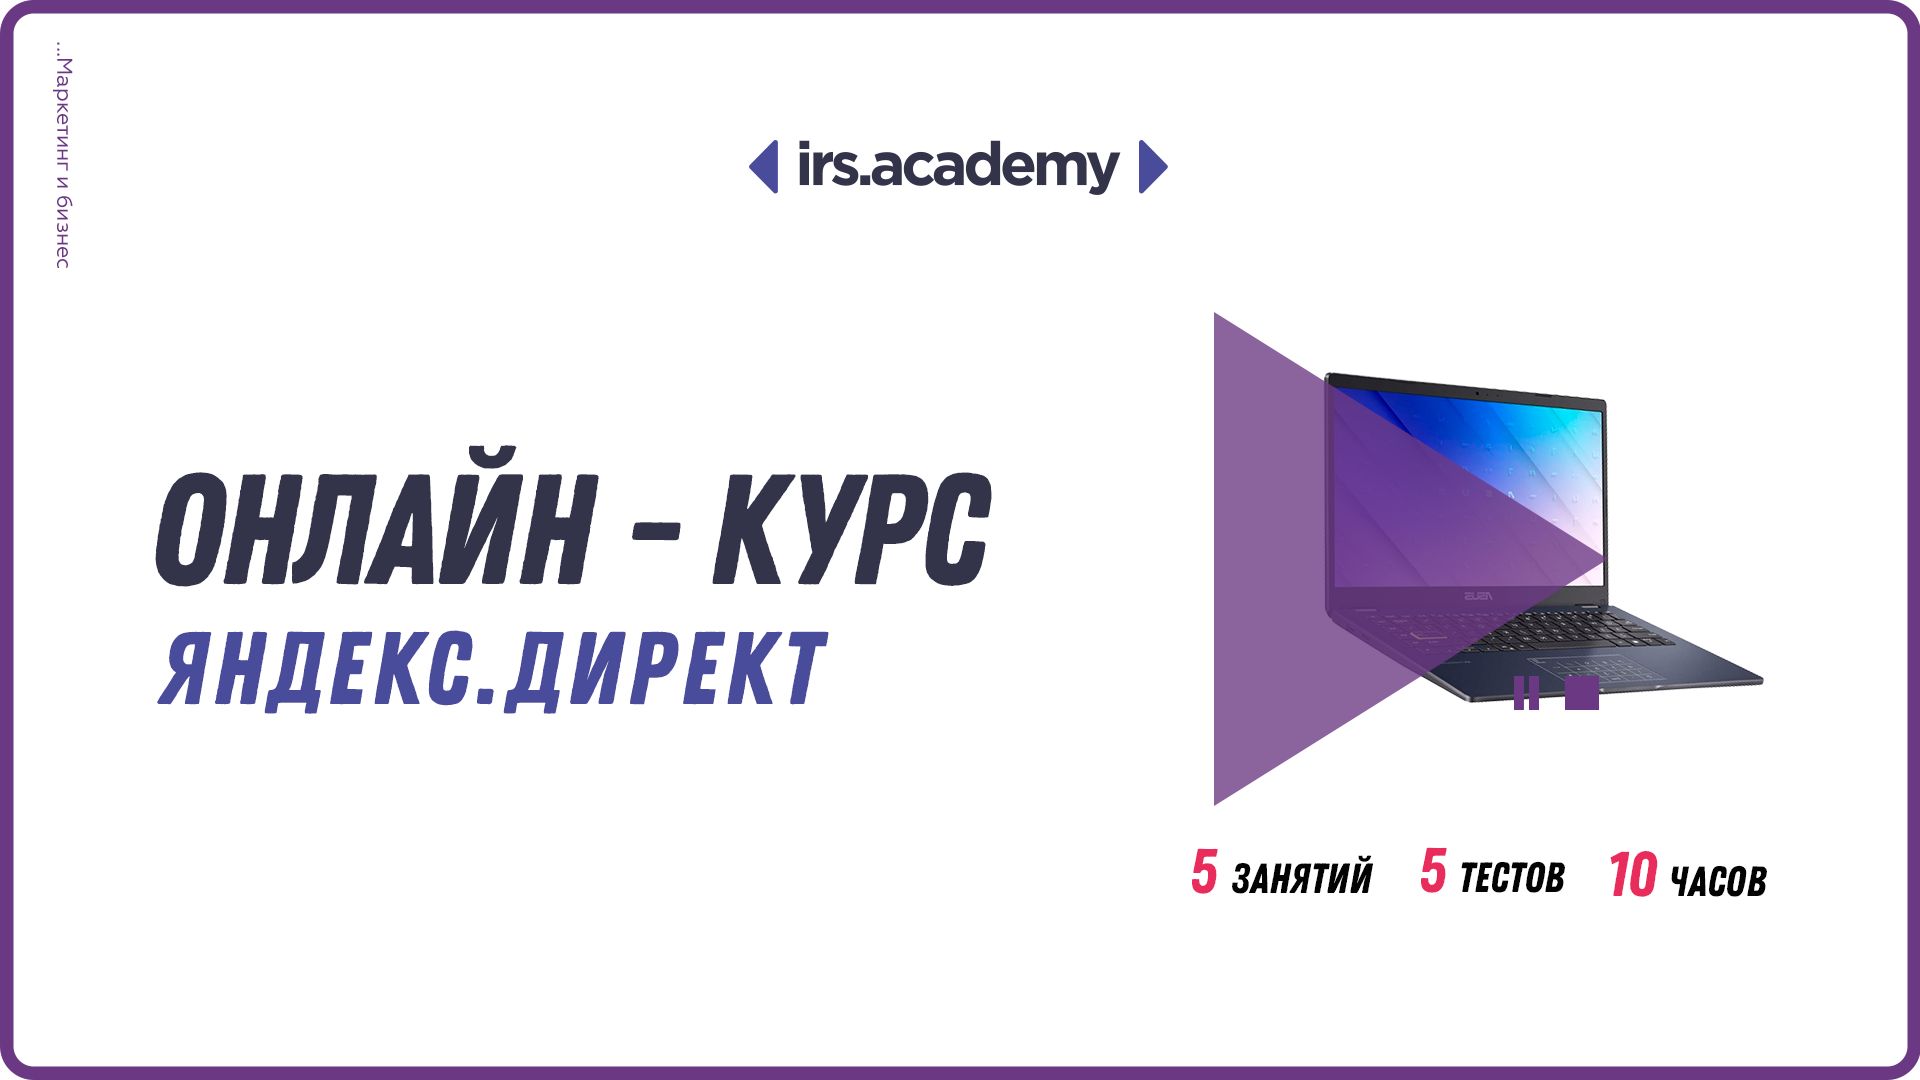 Видео самоучитель по Яндекс.Директ / Онлайн курс по контекстной рекламе / Обучение Яндекс Директу